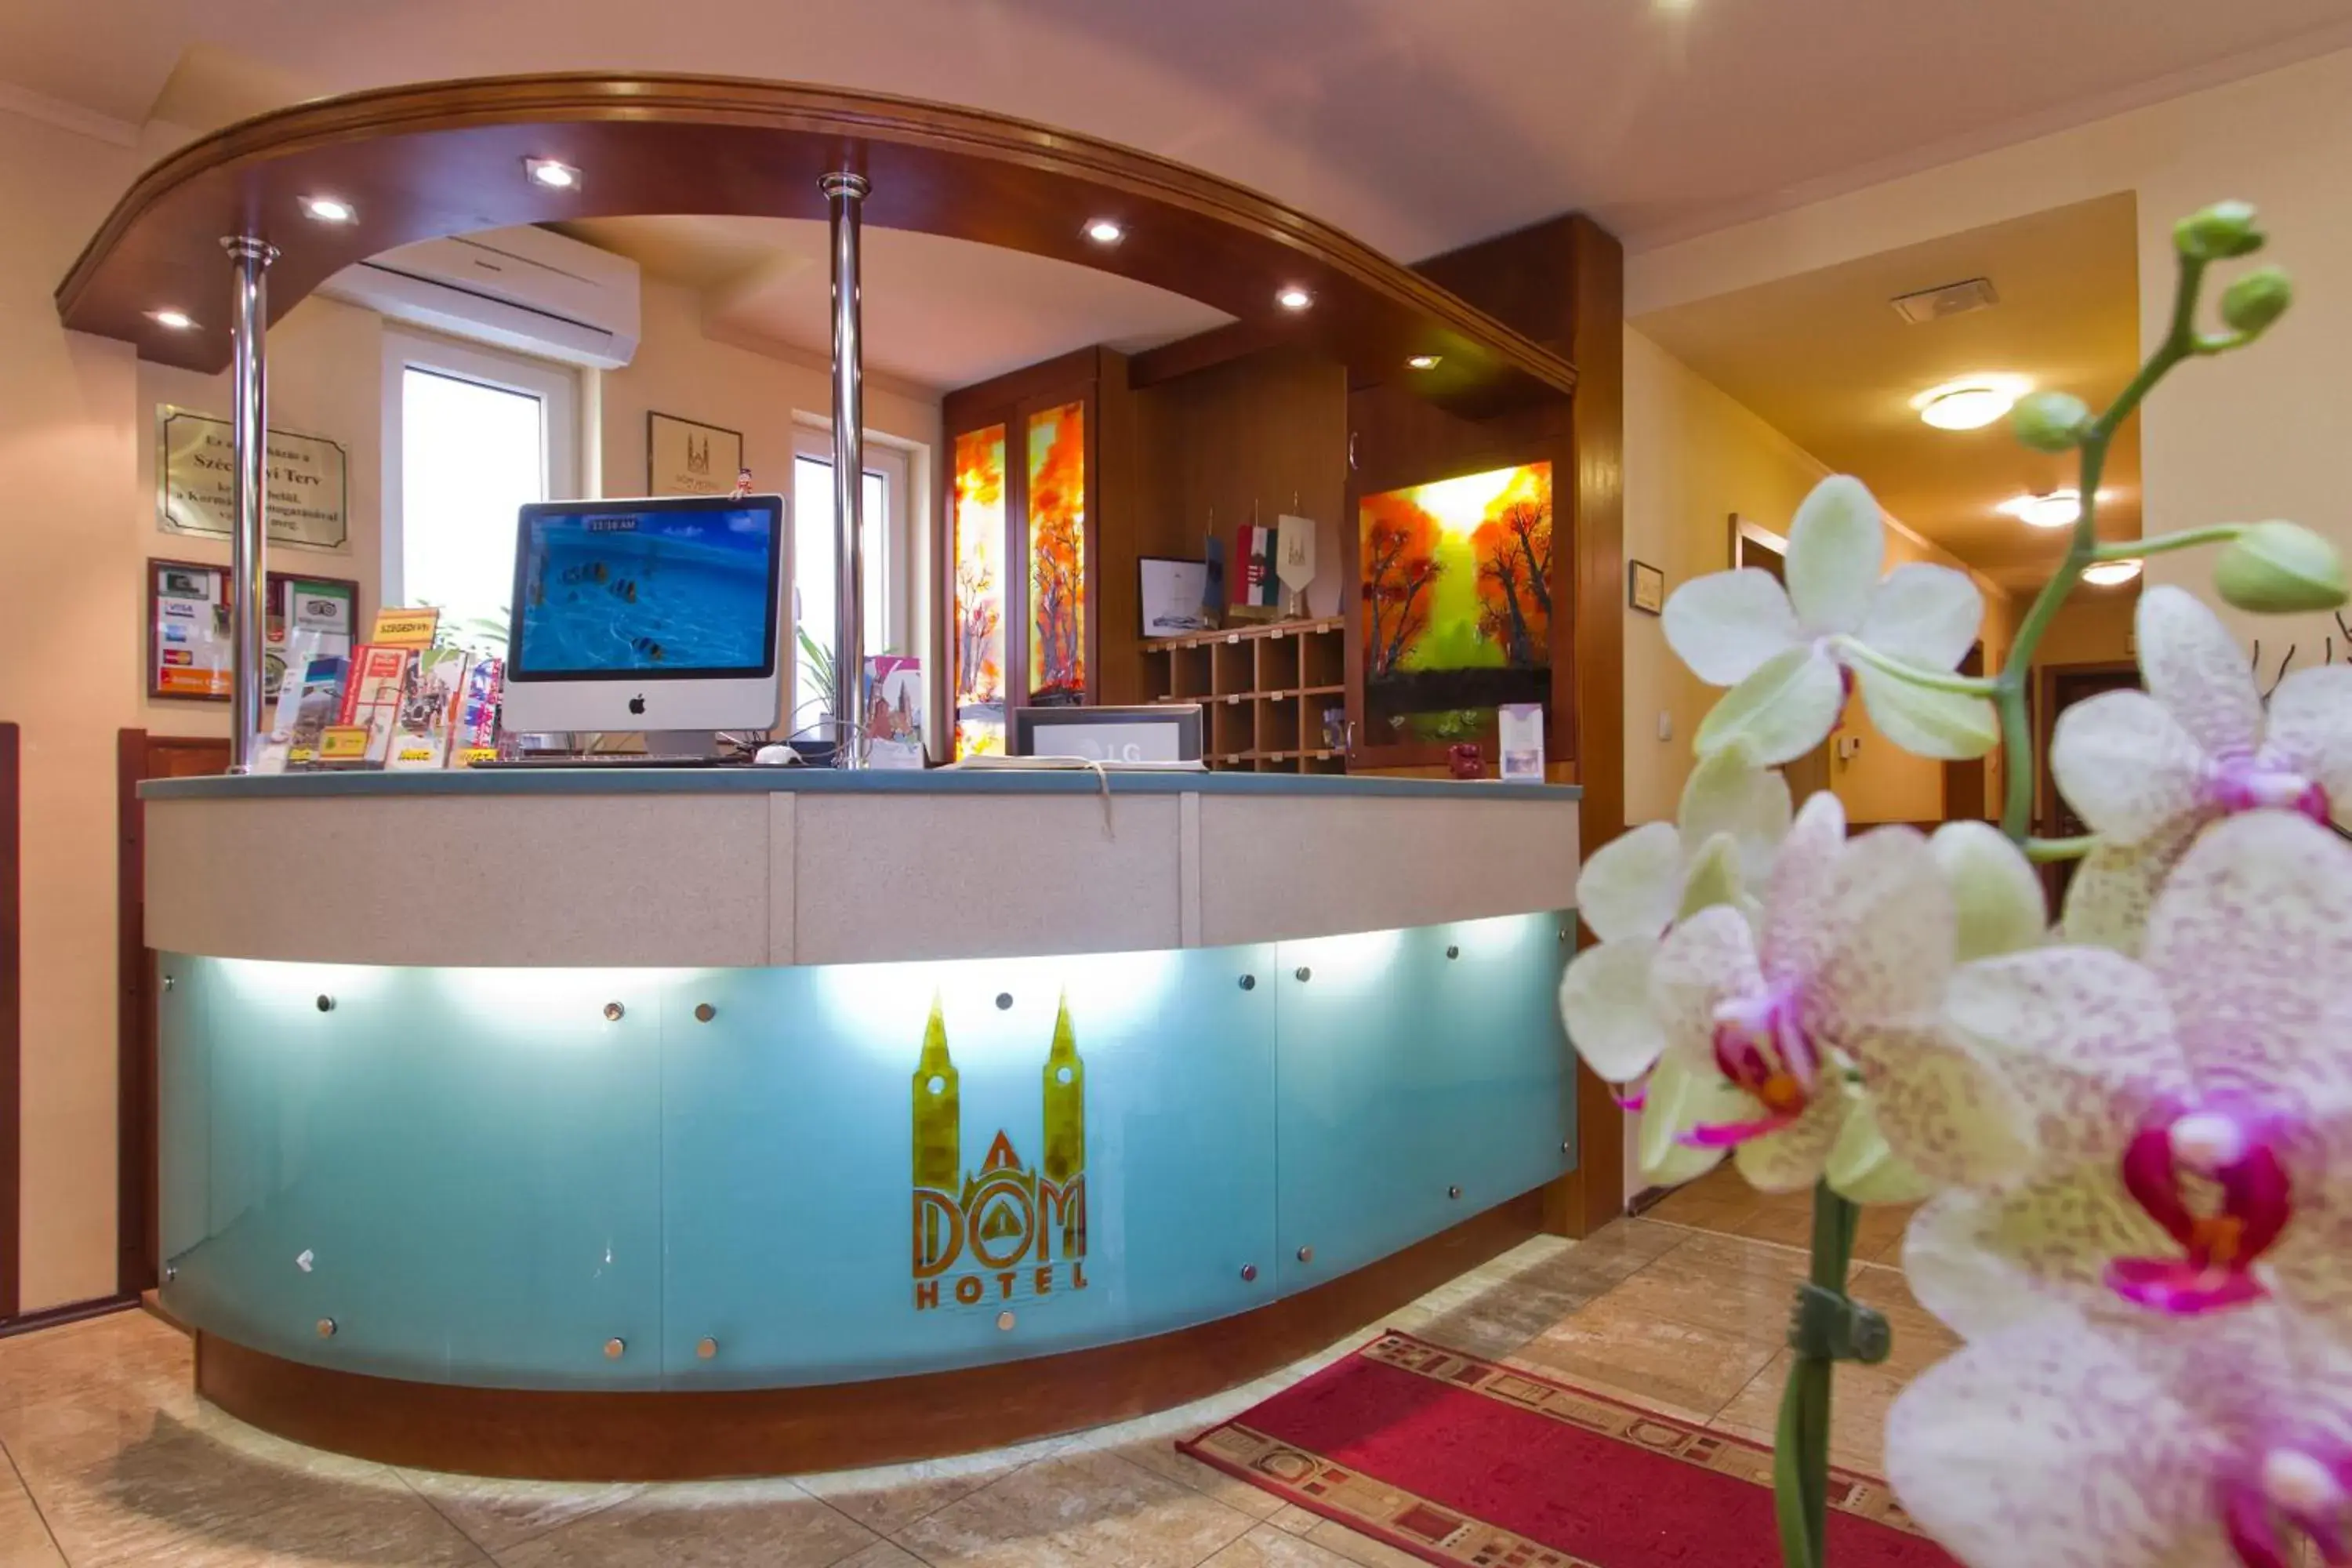 Lobby or reception, Lobby/Reception in Dóm Hotel